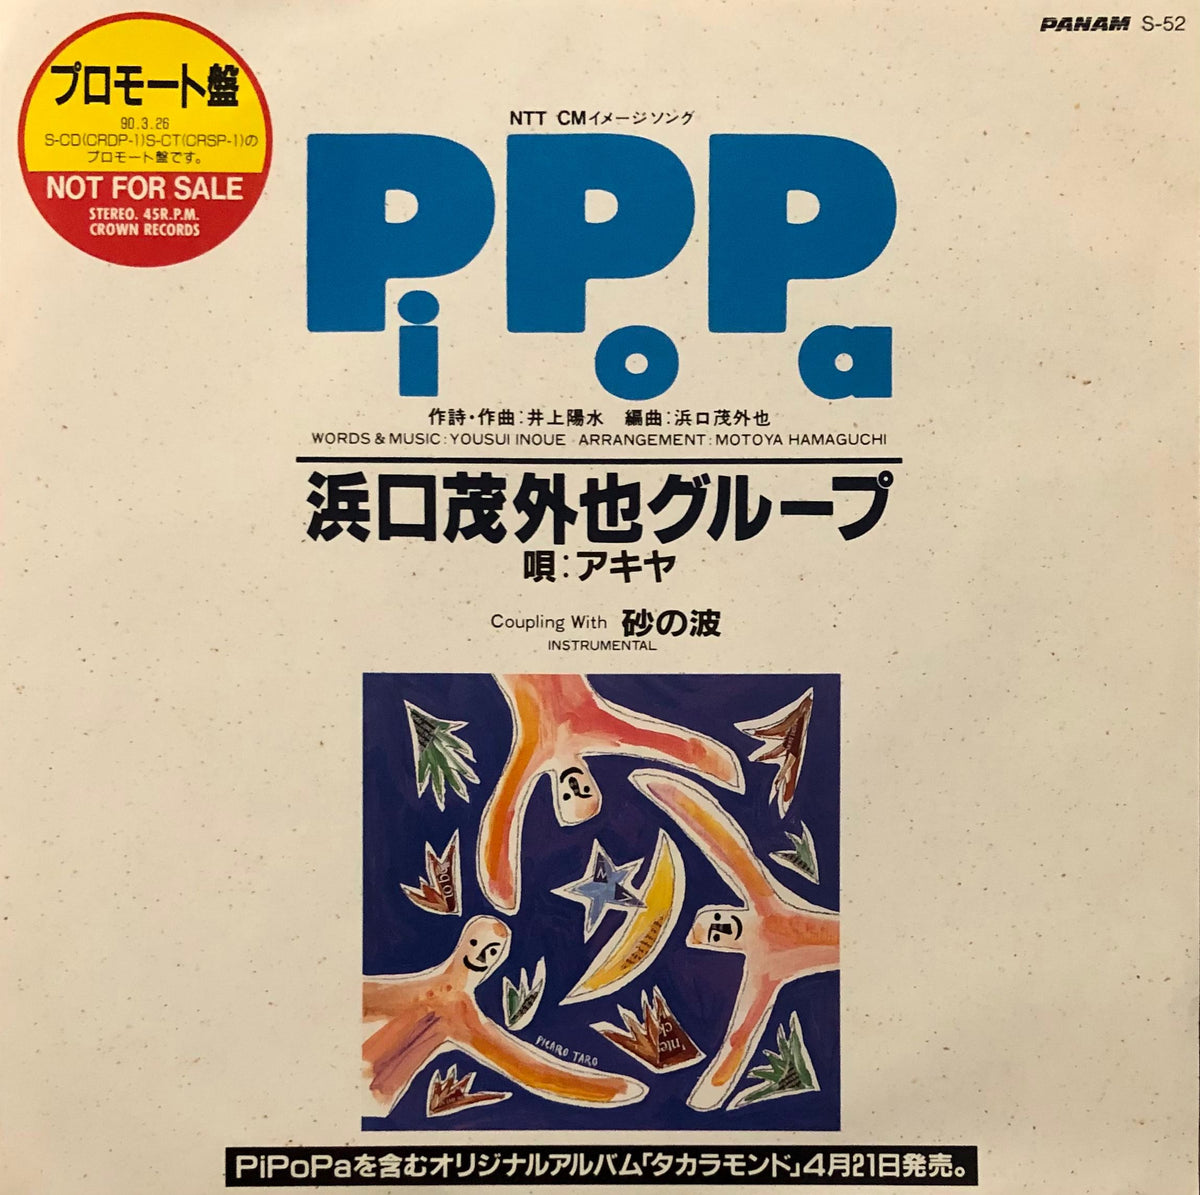 Motoya Hamaguchi Group u003d 浜口茂外也グループ - Pi Po Pa – Galapagos Records